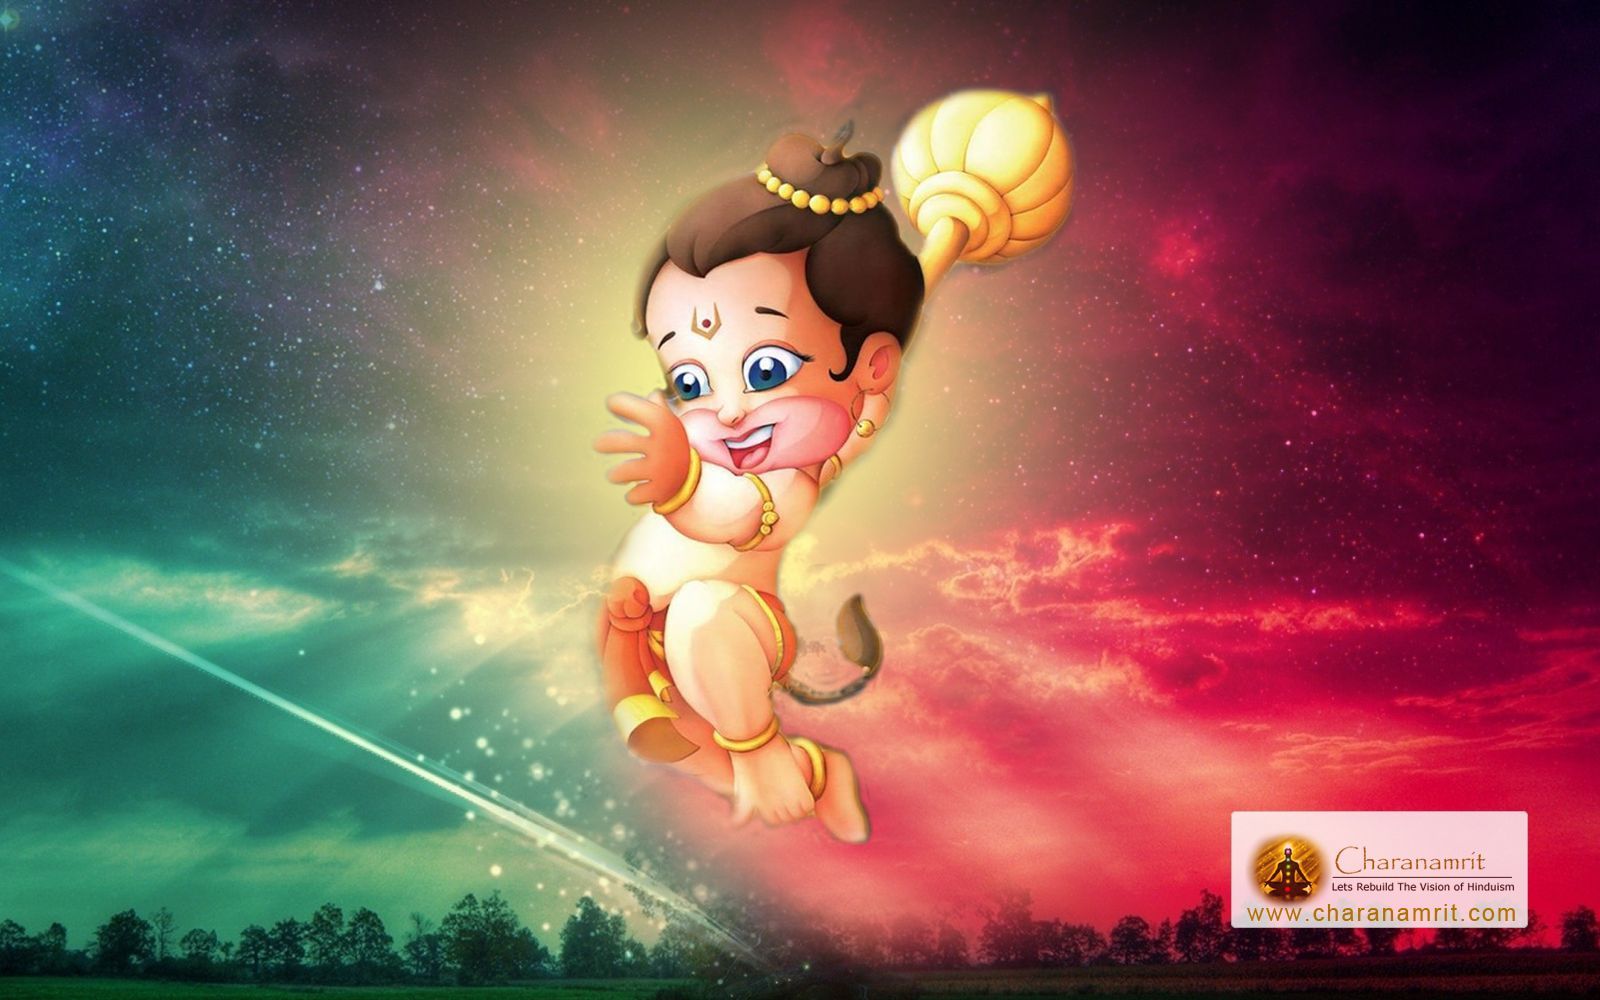 Hanuman Animated Wallpapers - Wallpaper Cave